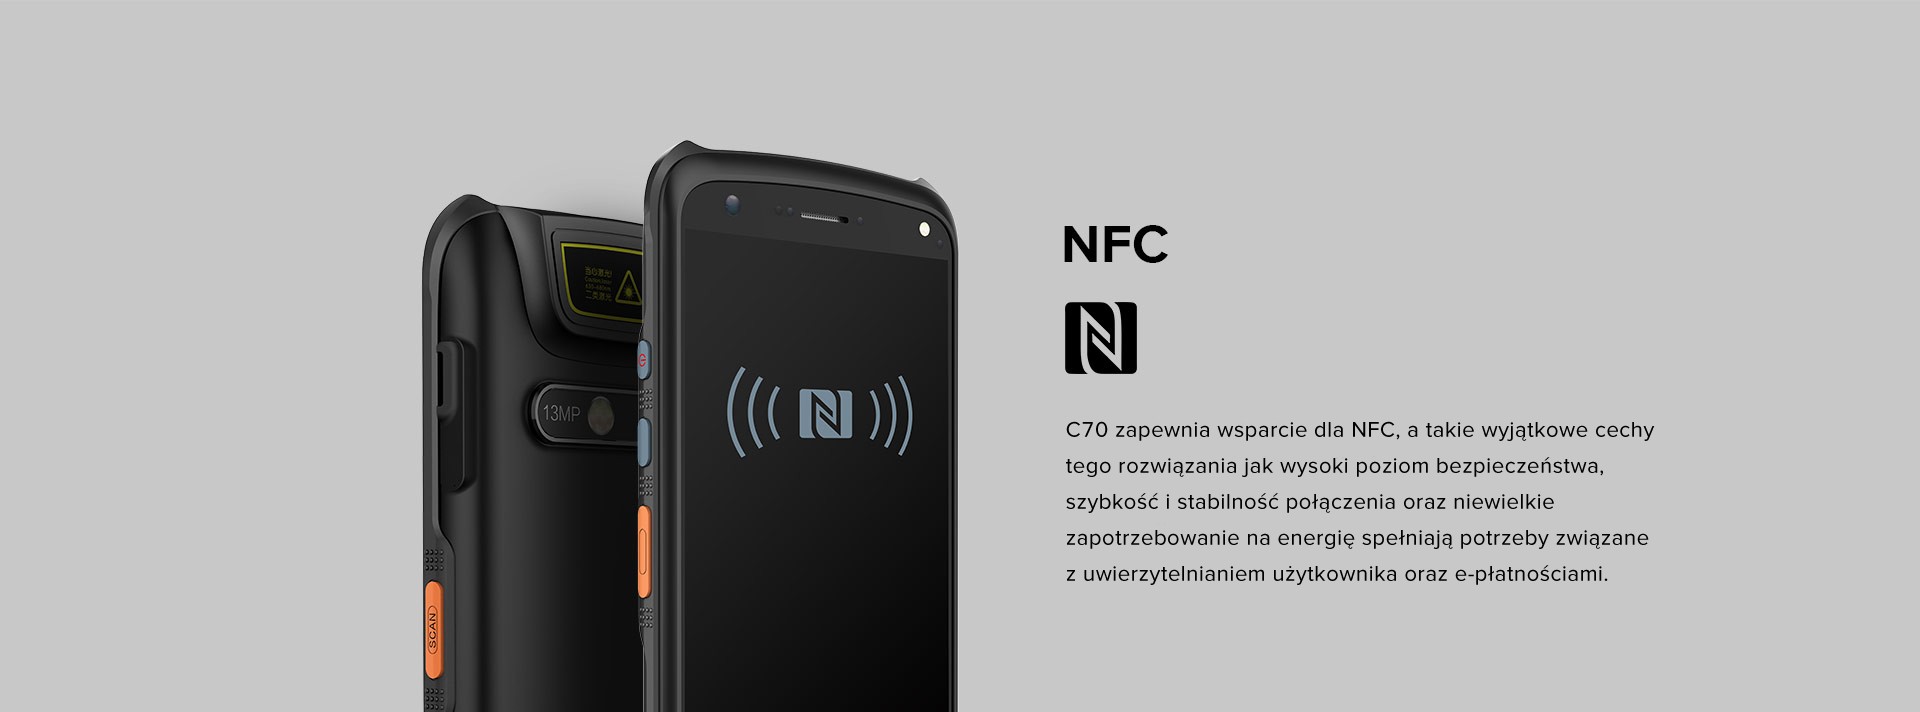 C70 zapewnia wsparcie dla NFC, a takie wyjątkowe cechy tego rozwiązania jak wysoki poziom bezpieczeństwa, szybkość i stabilność połączenia oraz niewielkie zapotrzebowanie na energię spełniają potrzeby związane z uwierzytelnianiem użytkownika oraz e-płatnościami.